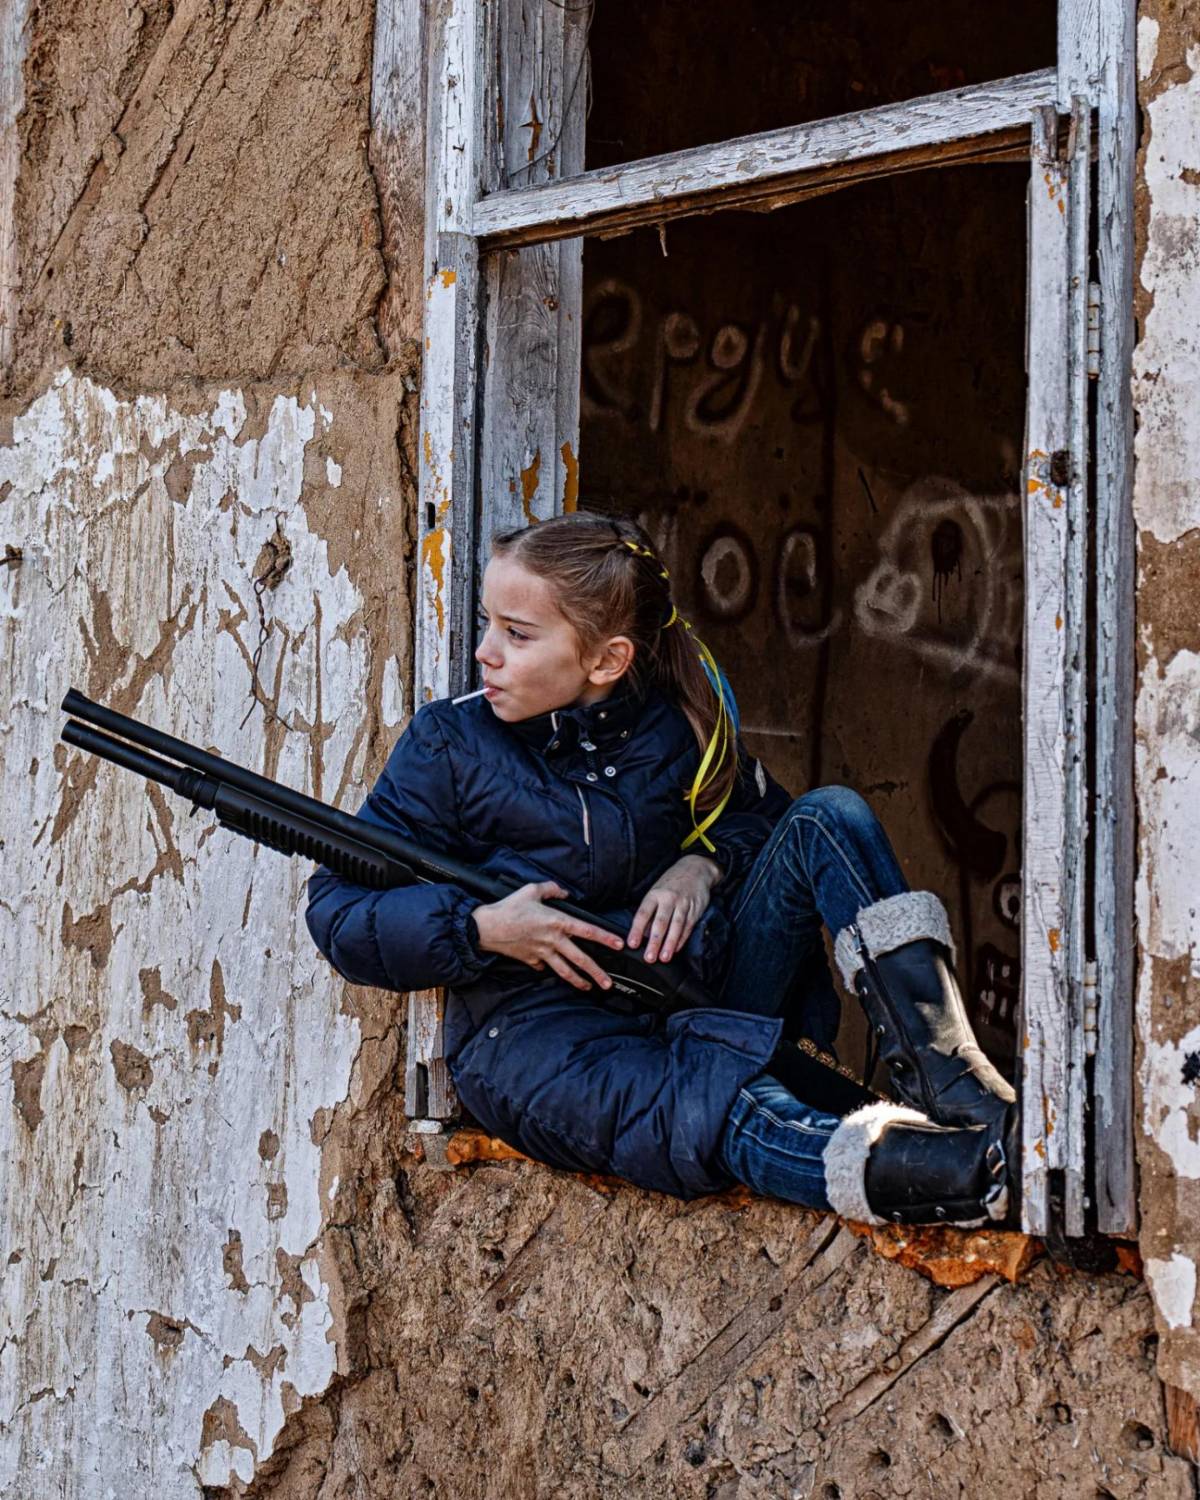 La bambina con il fucile e il lecca lecca. La foto-simbolo (posata) infiamma il web